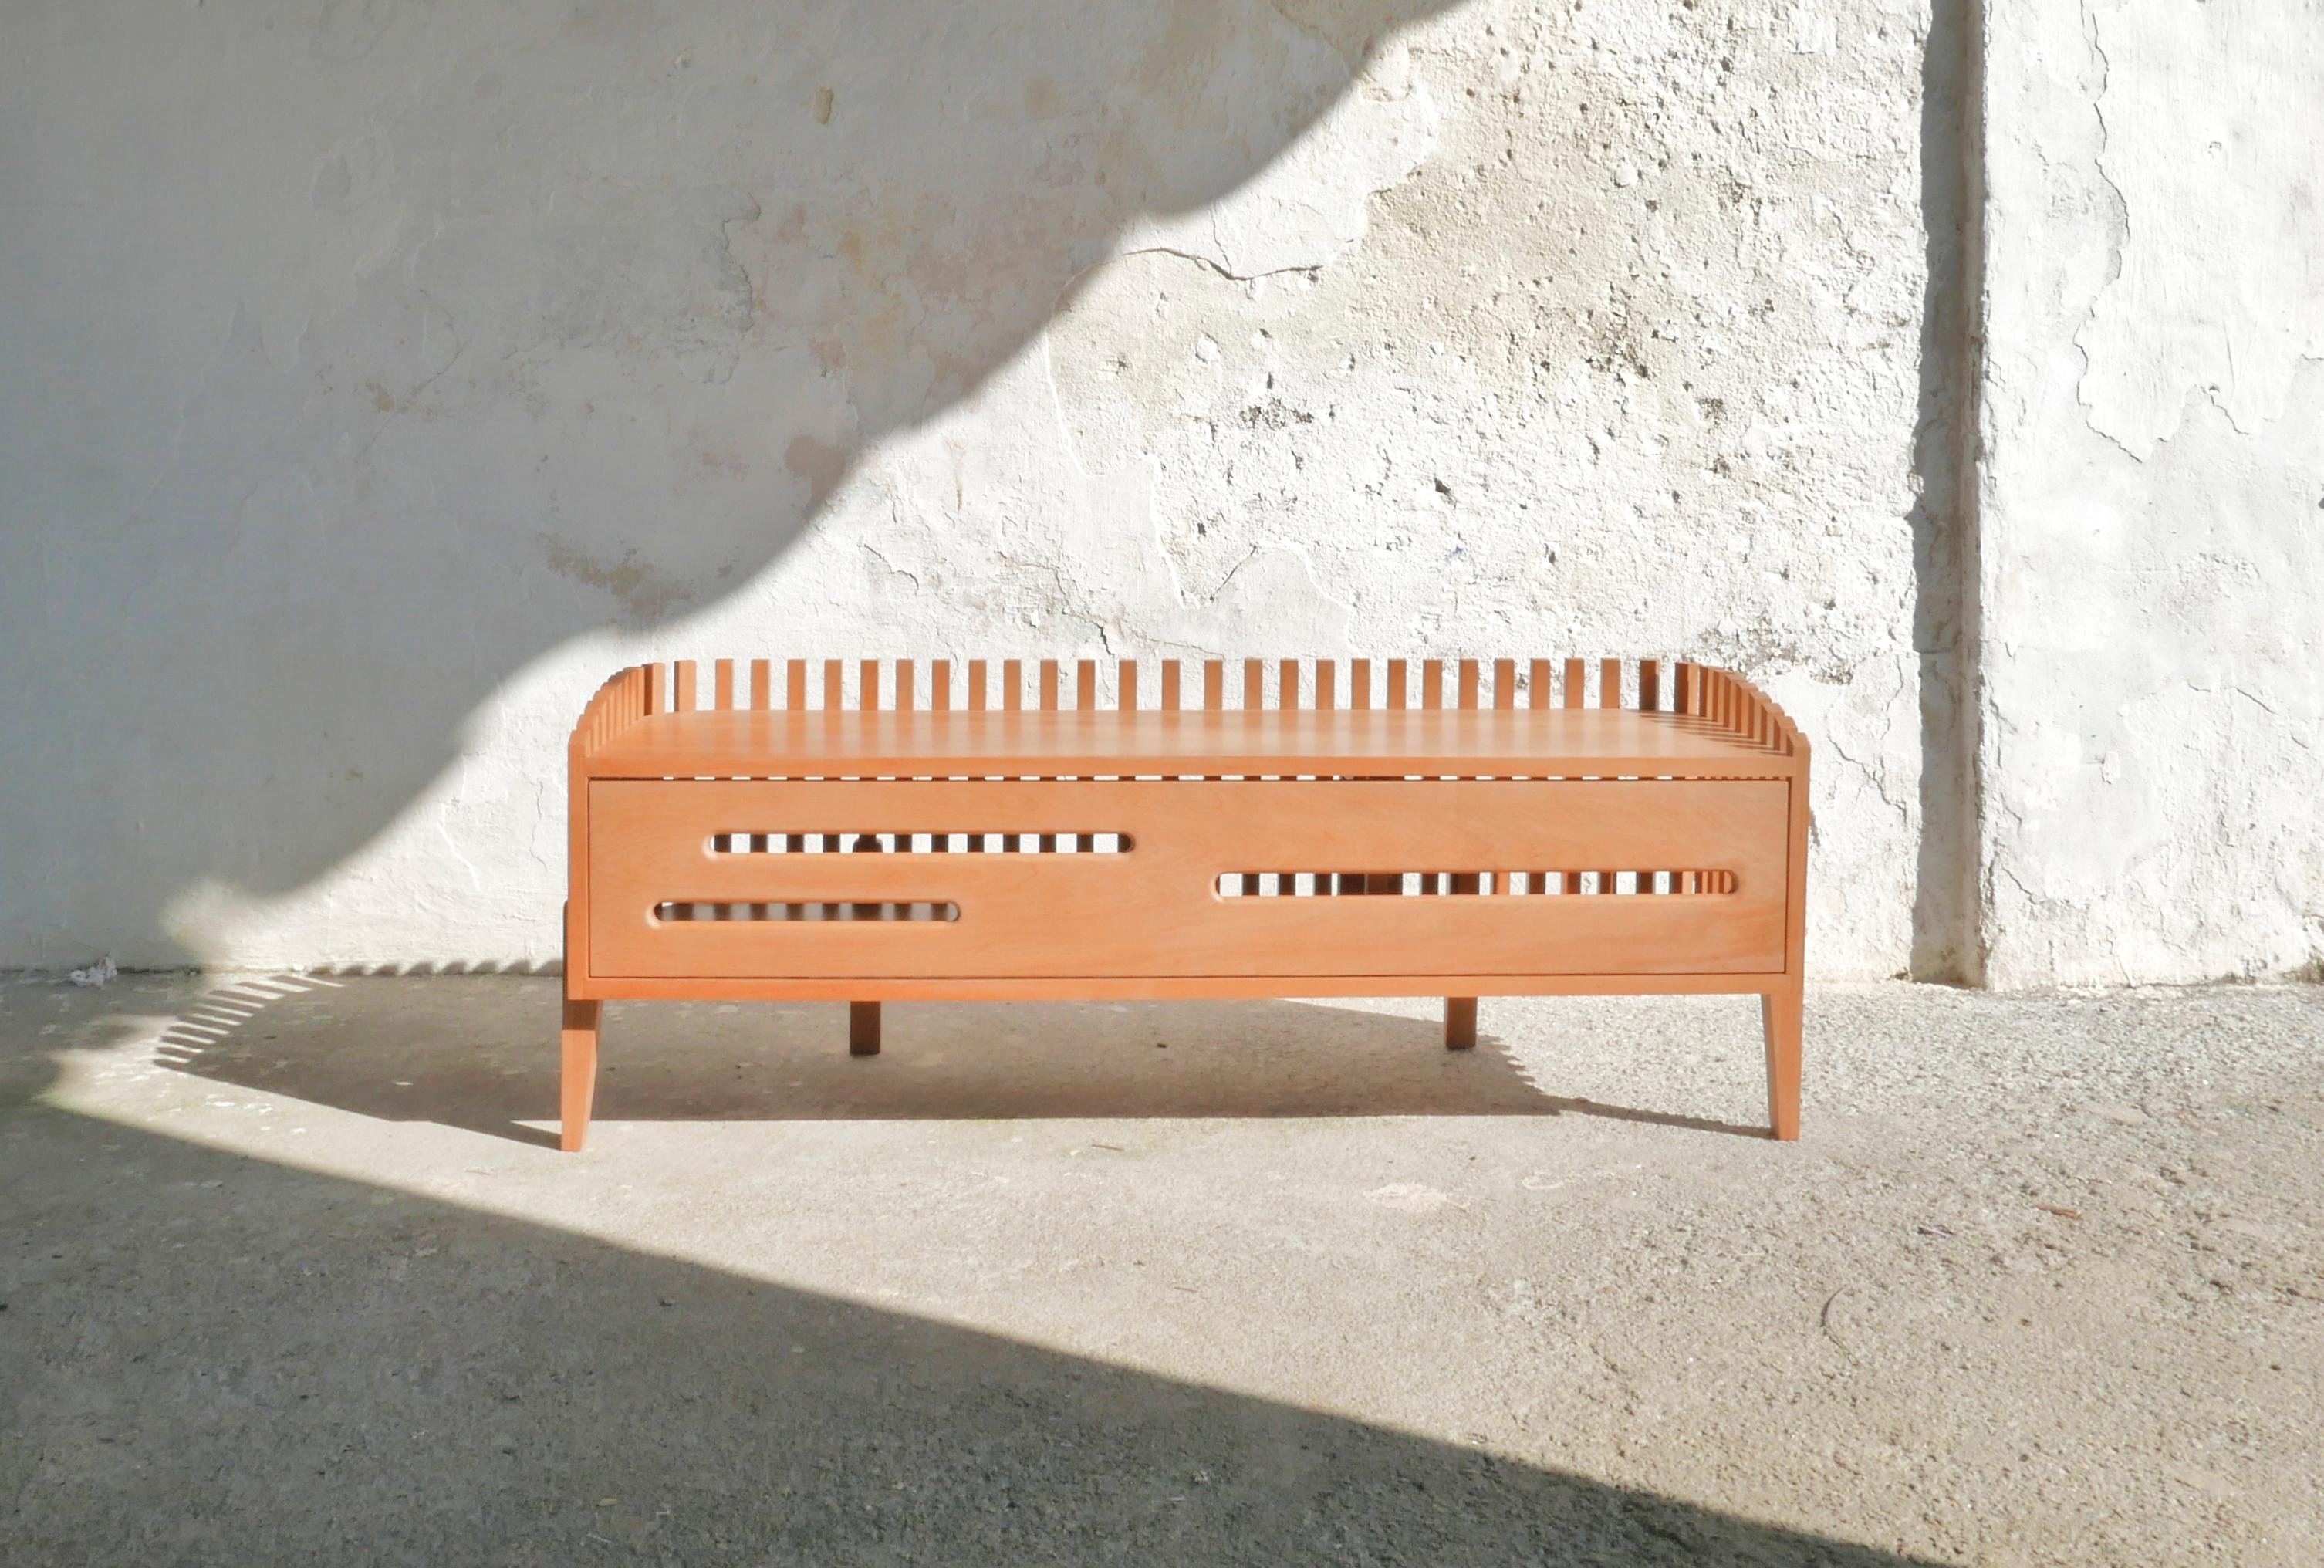 Die Arca Schuhablage/Bank besteht aus dünnen Holzlatten, die das Möbelstück umschließen, den Hauptkörper stützen und ein Gefühl der Bewegung erzeugen. Die Lamellen ermöglichen eine ständige Belüftung und schaffen gleichzeitig einen geschlossenen